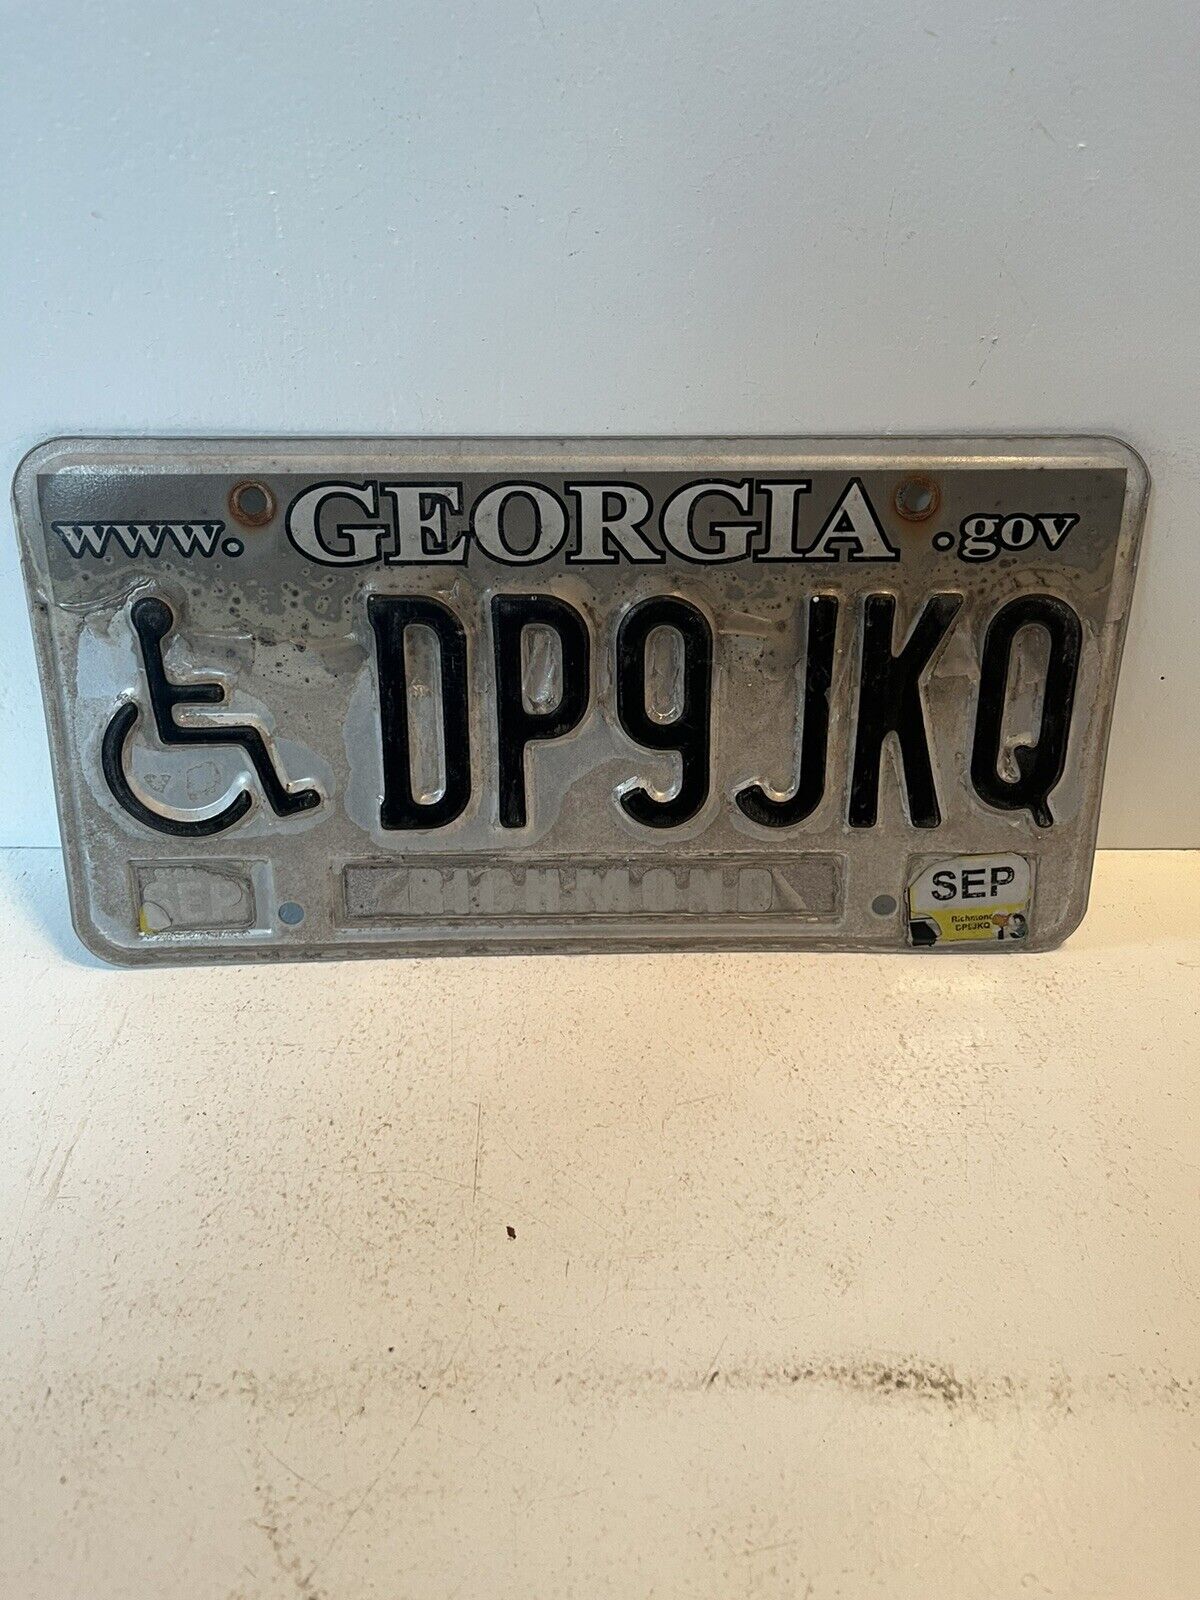 Georgia expired 2010 handicap licenses plate